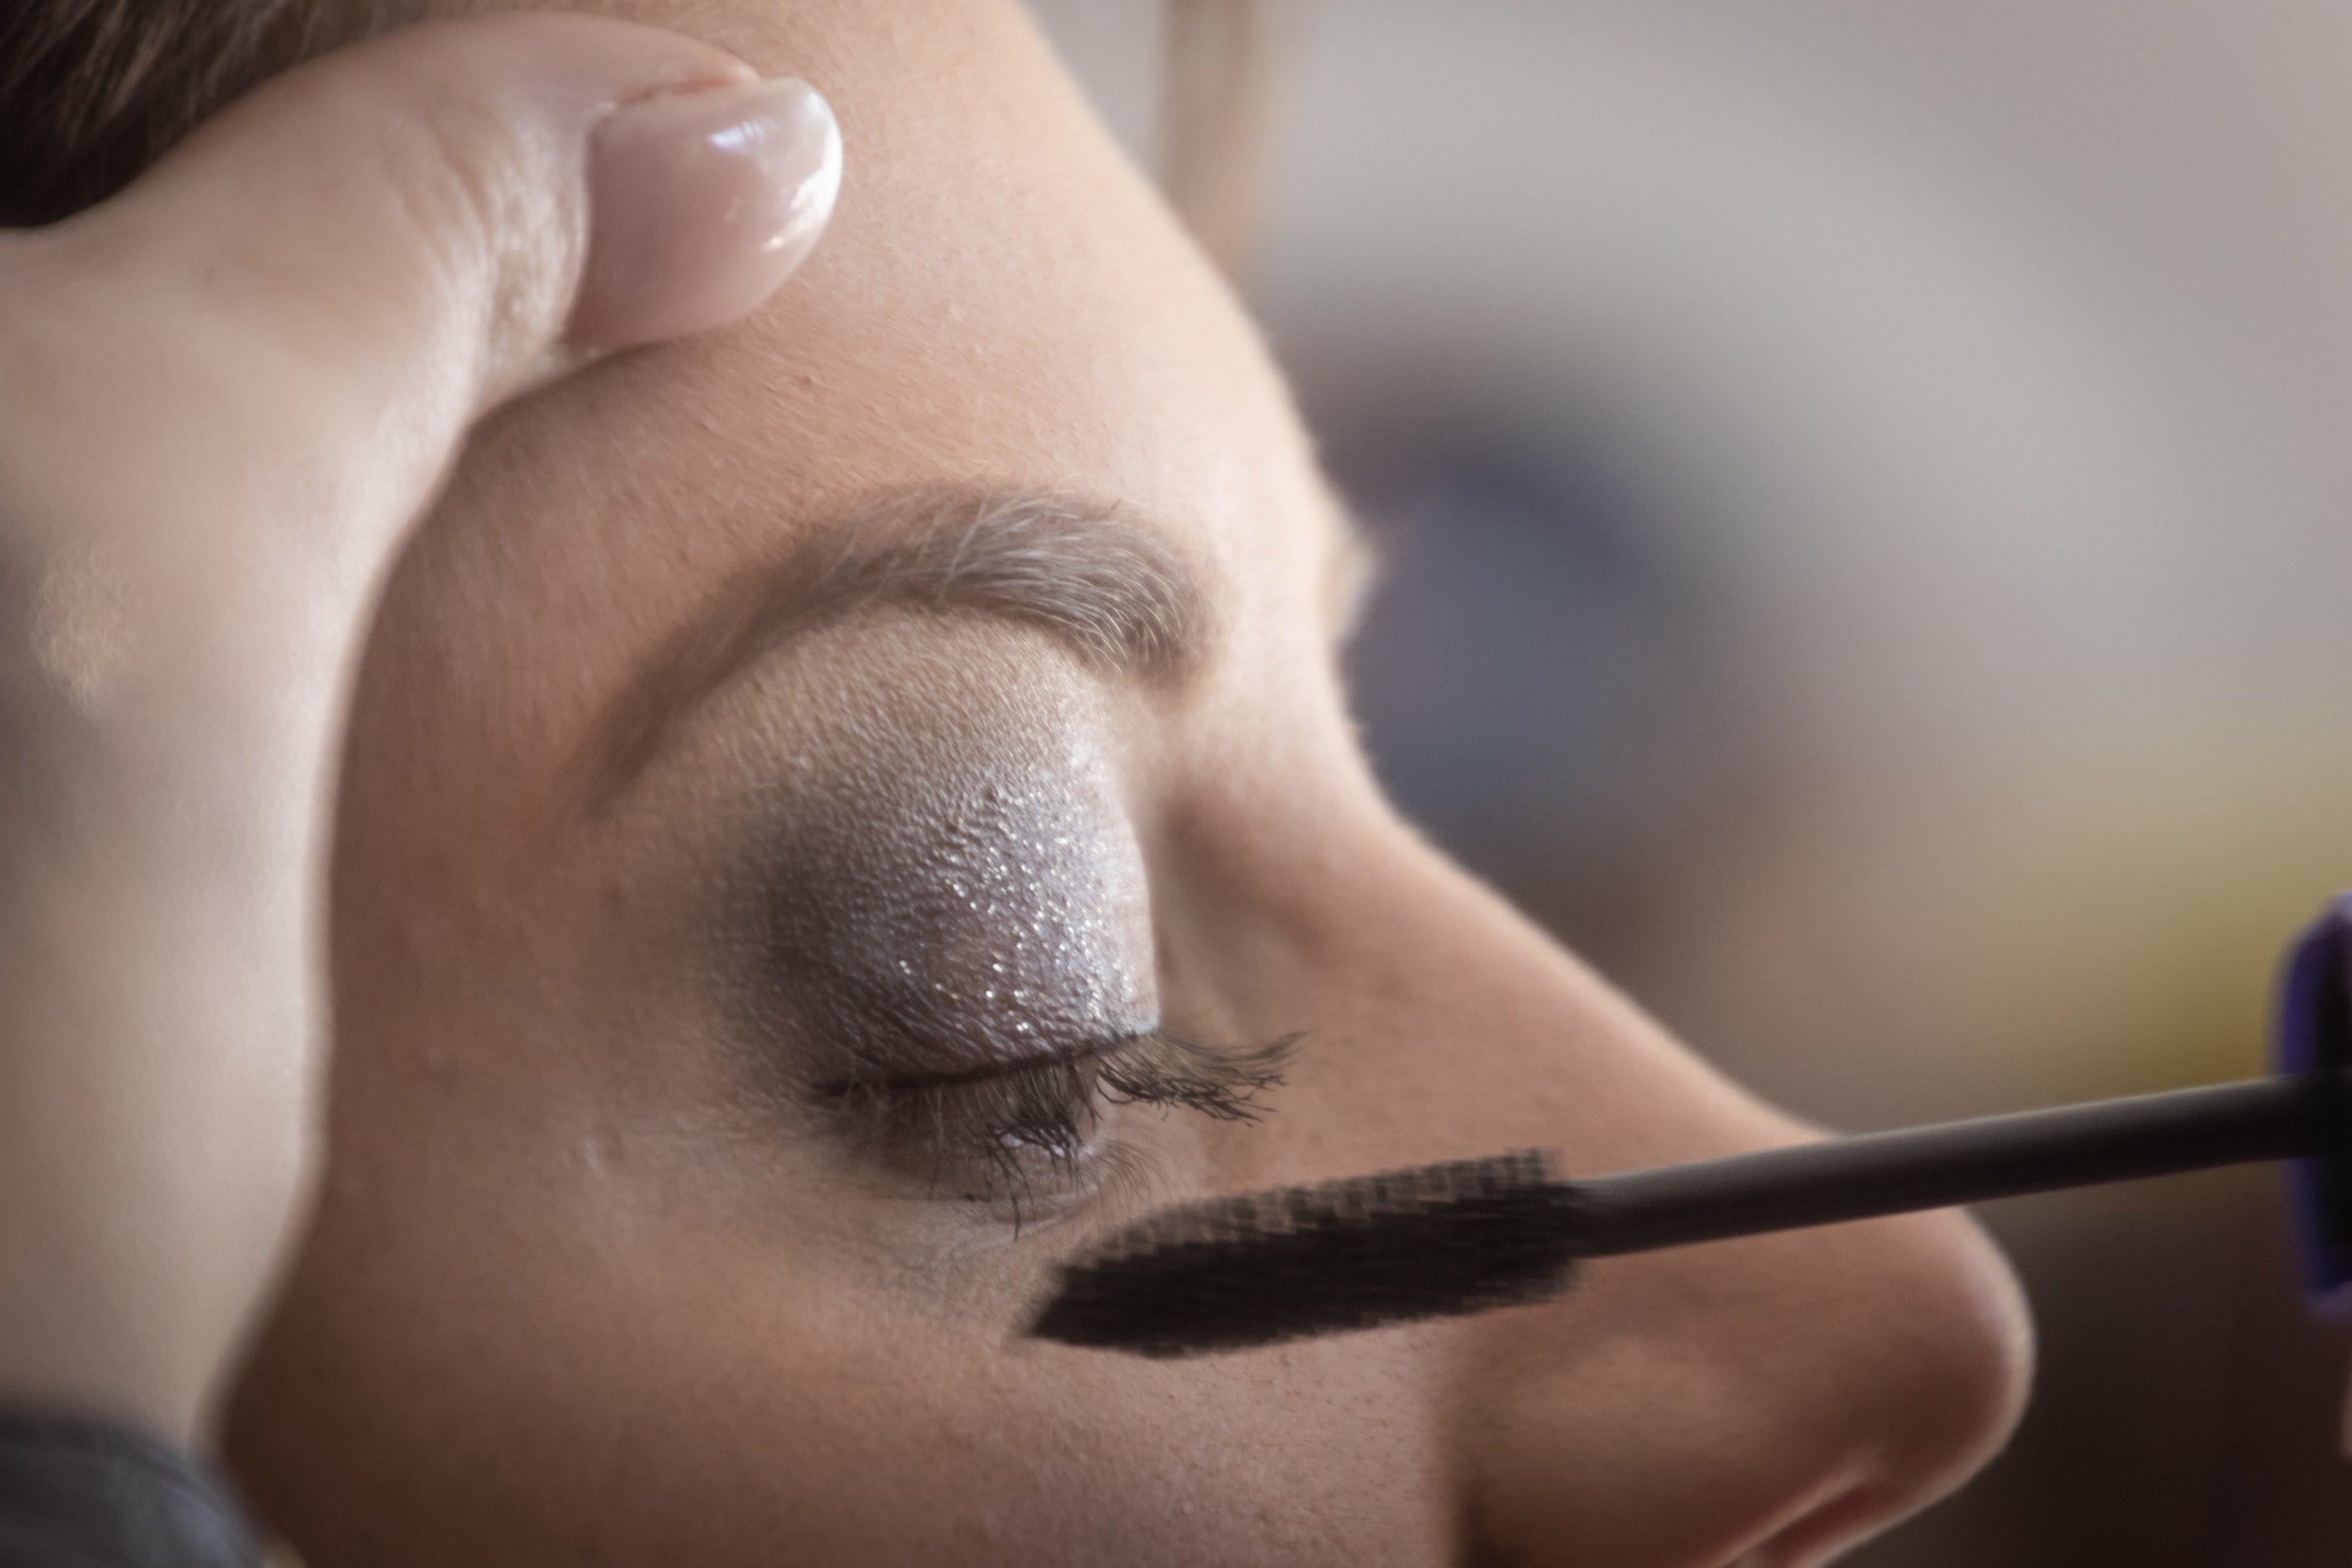 eye make up tips for women over 40